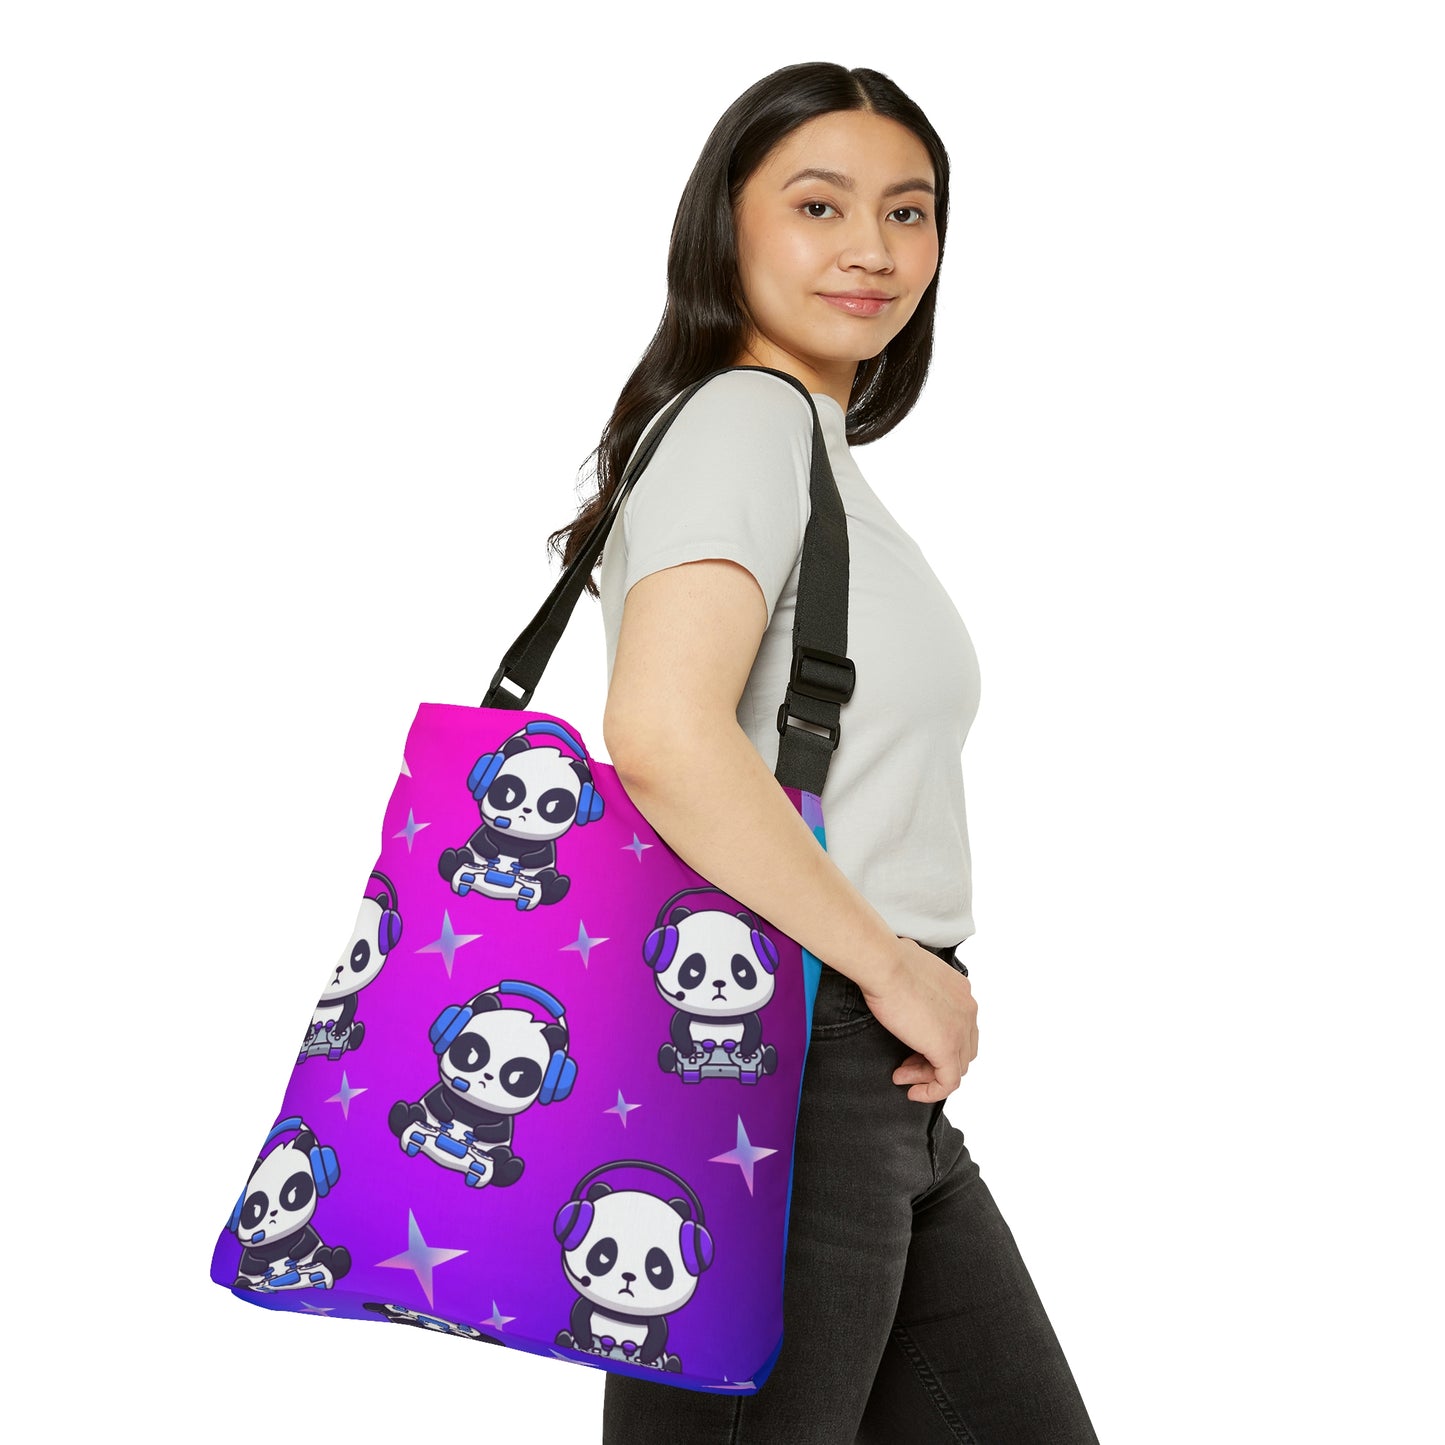 Panda Jamz Messenger Bag